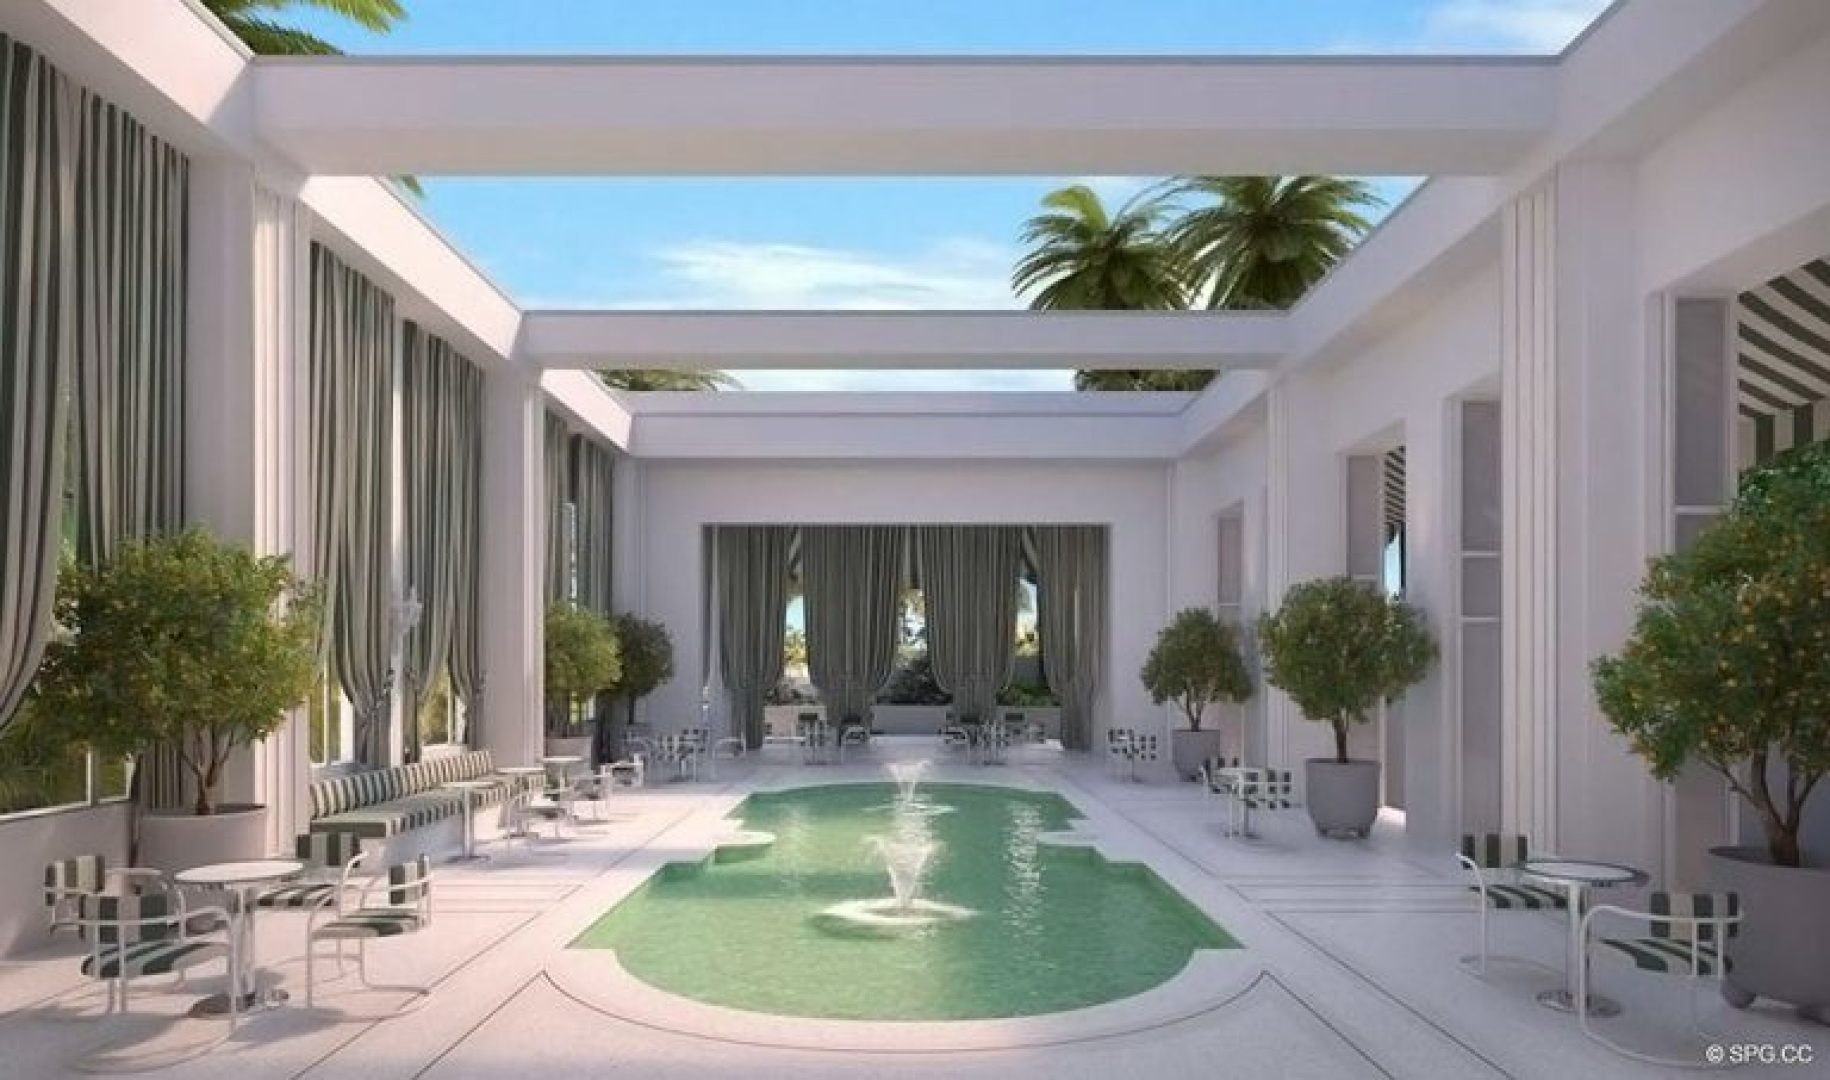 Pool Area for Faena Versailles Classic, Luxury Oceanfront Condos in Miami Beach, Florida 33140